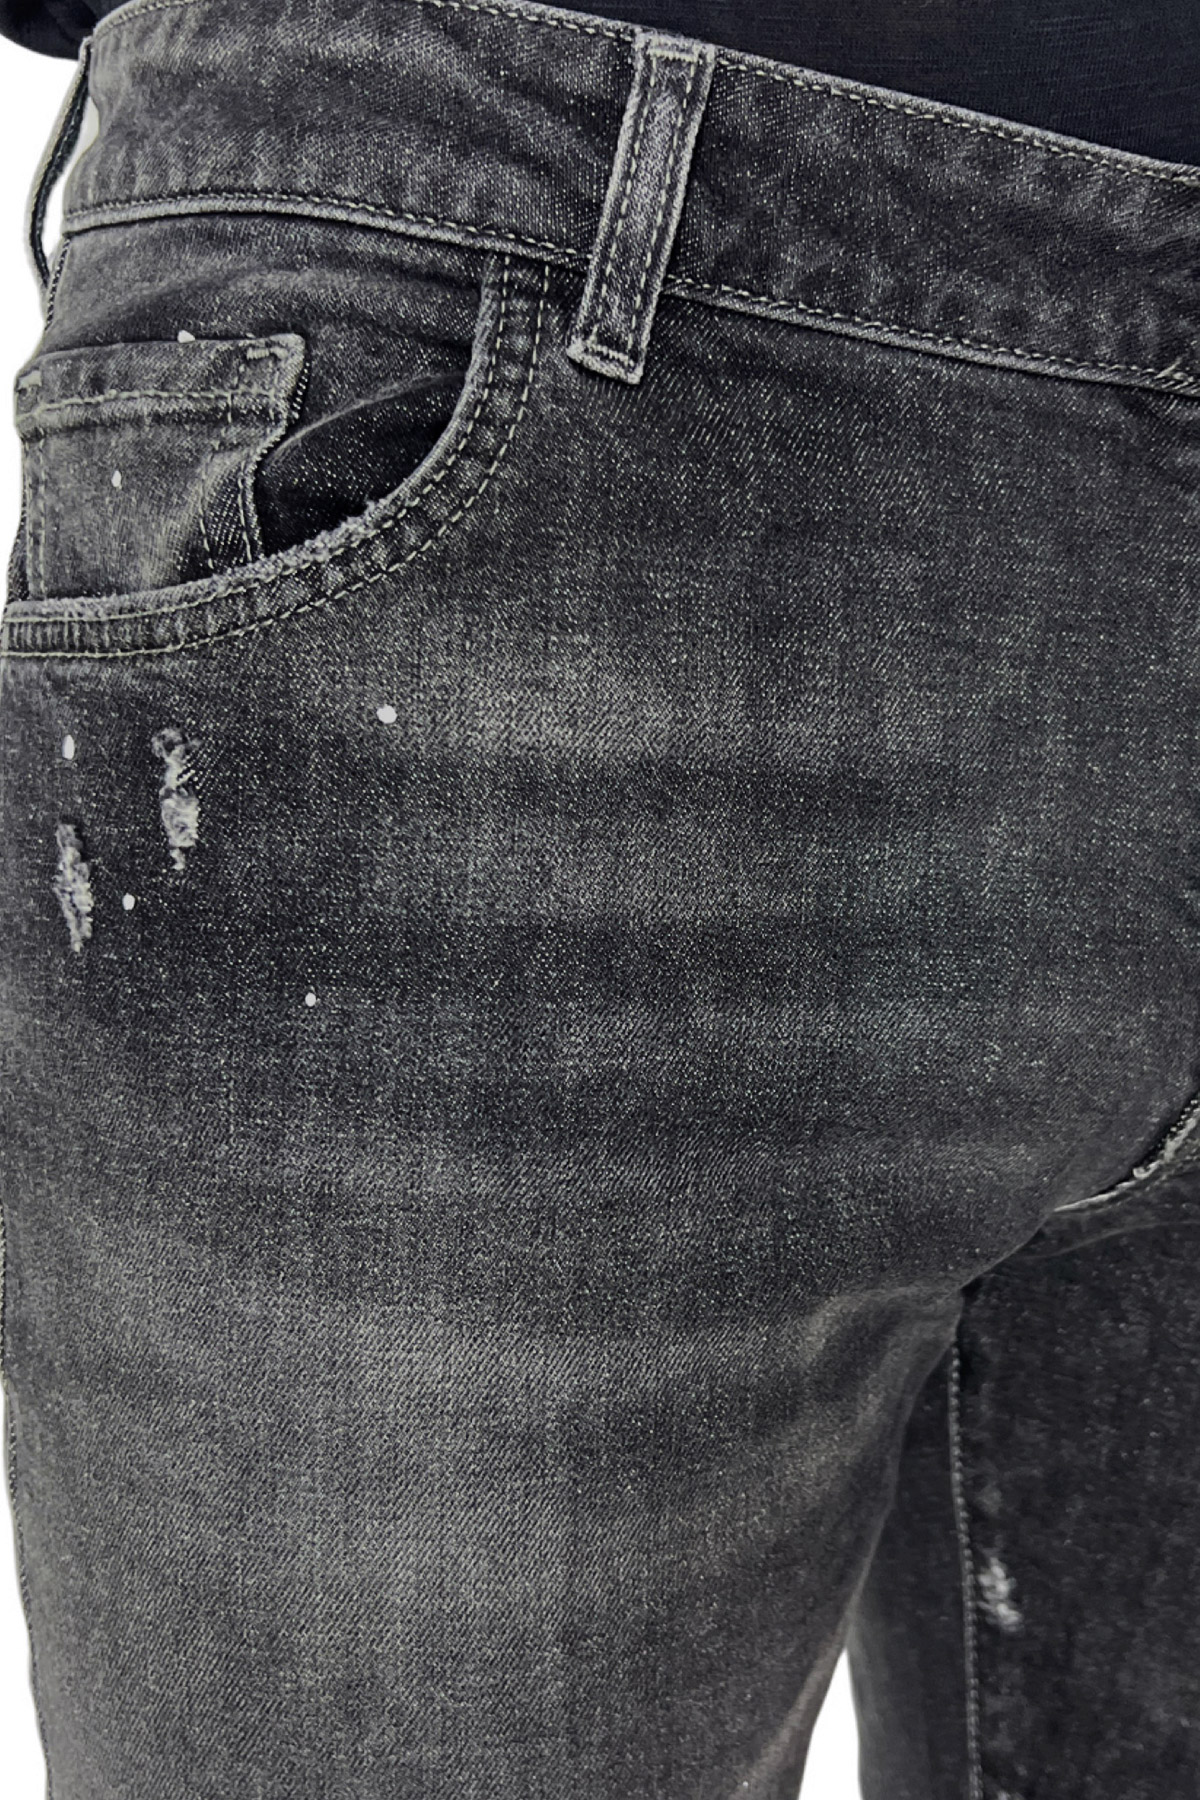 Jeans da uomo grigio scuro con leggere sabbiature bianche e schizzi di pittura